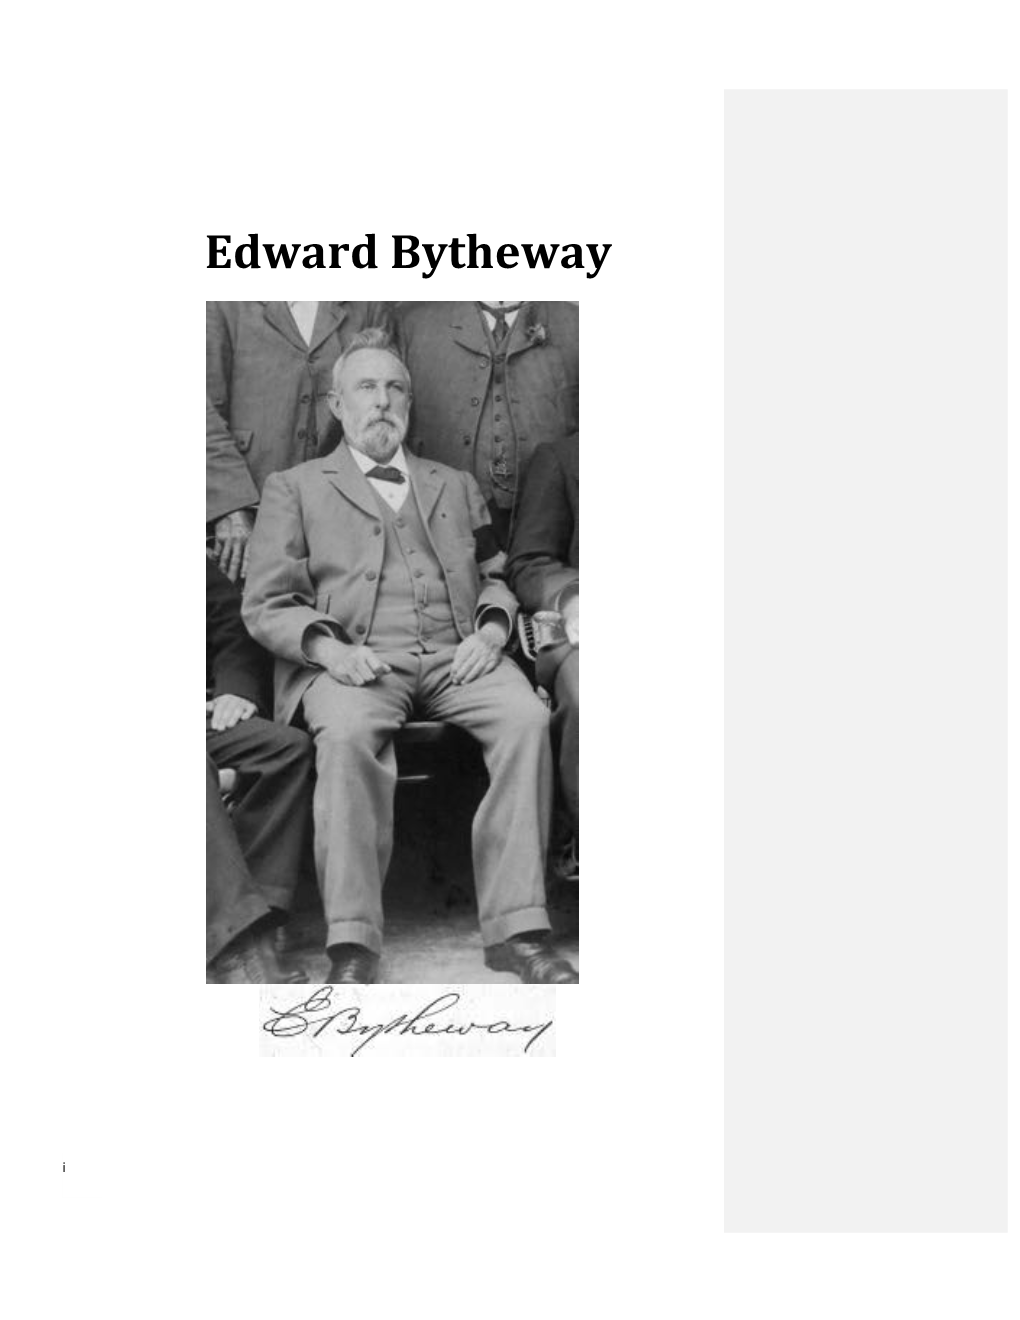 Edward Bytheway